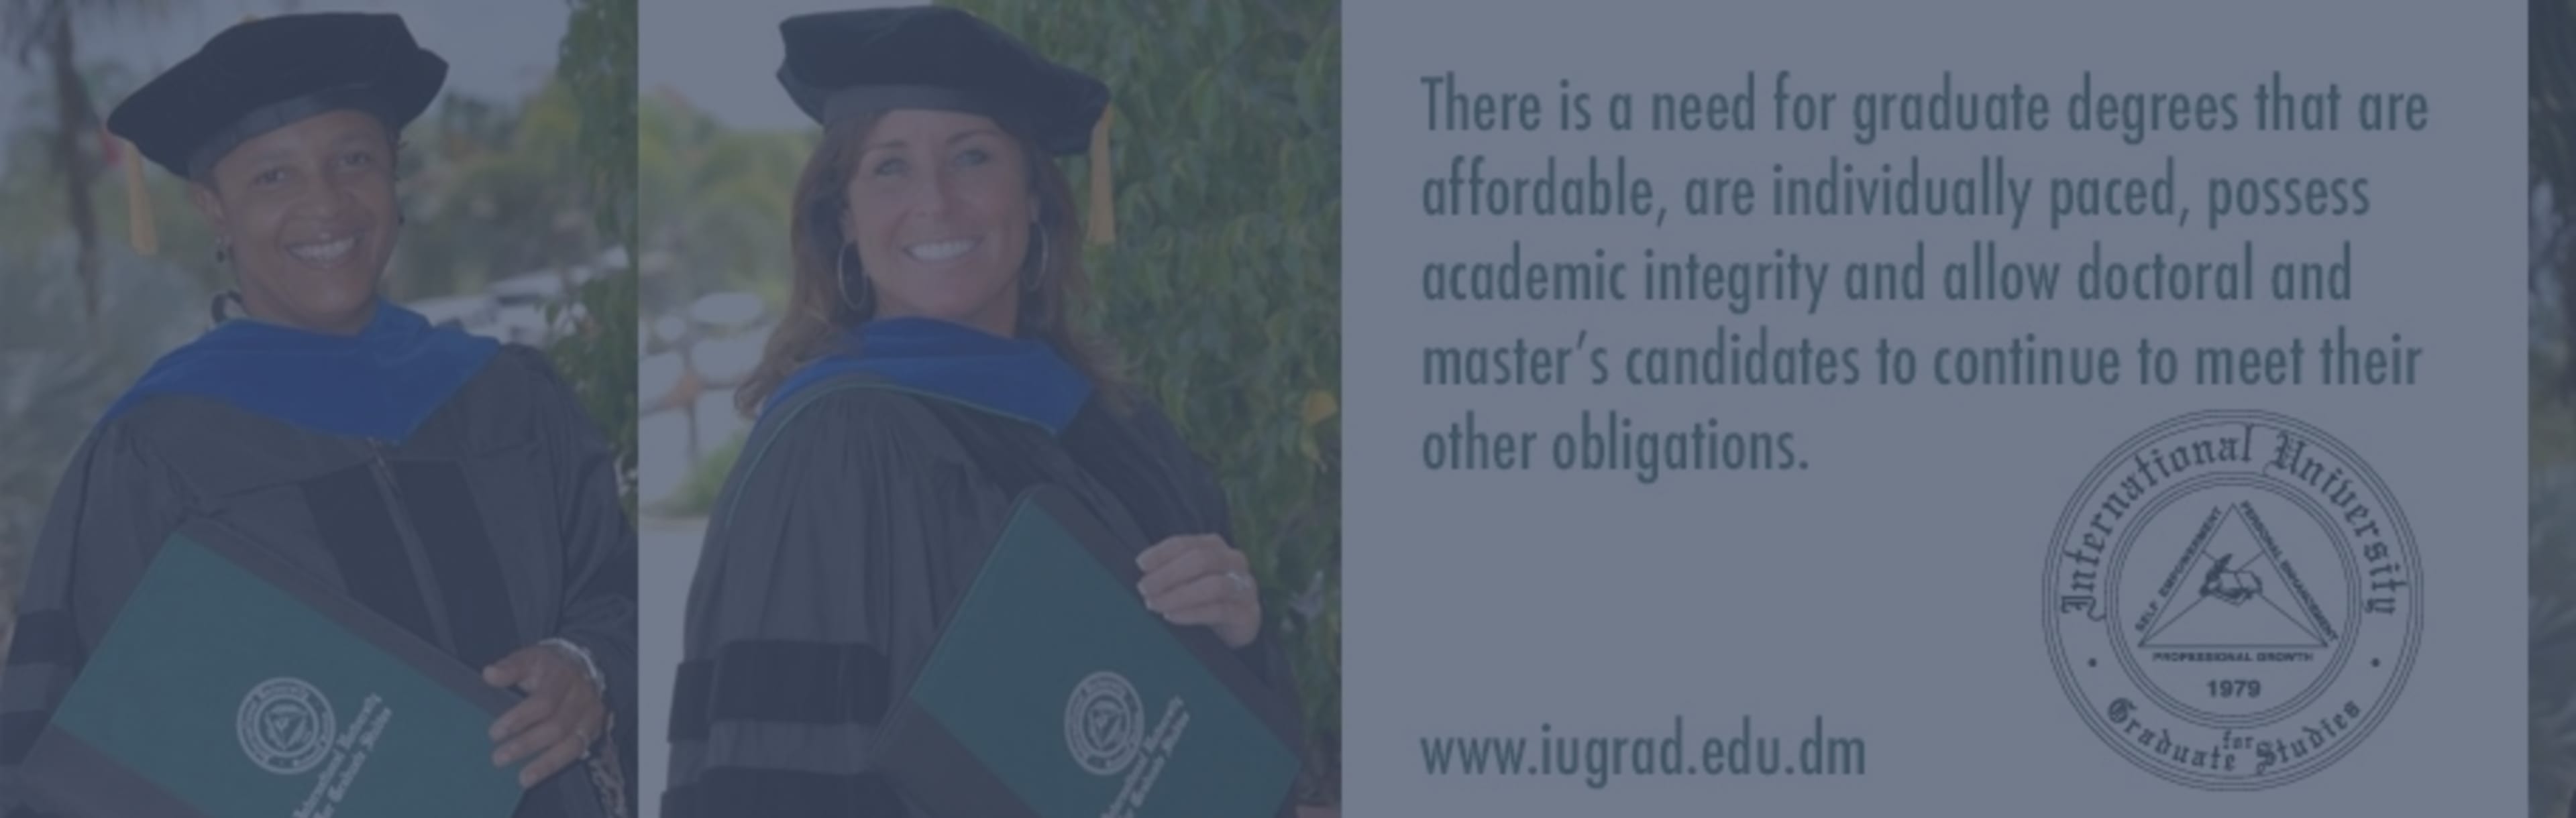 International University For Graduate Studies -  IUGS Doktorgrad i helseforvaltningen og helsevesenet administrasjon